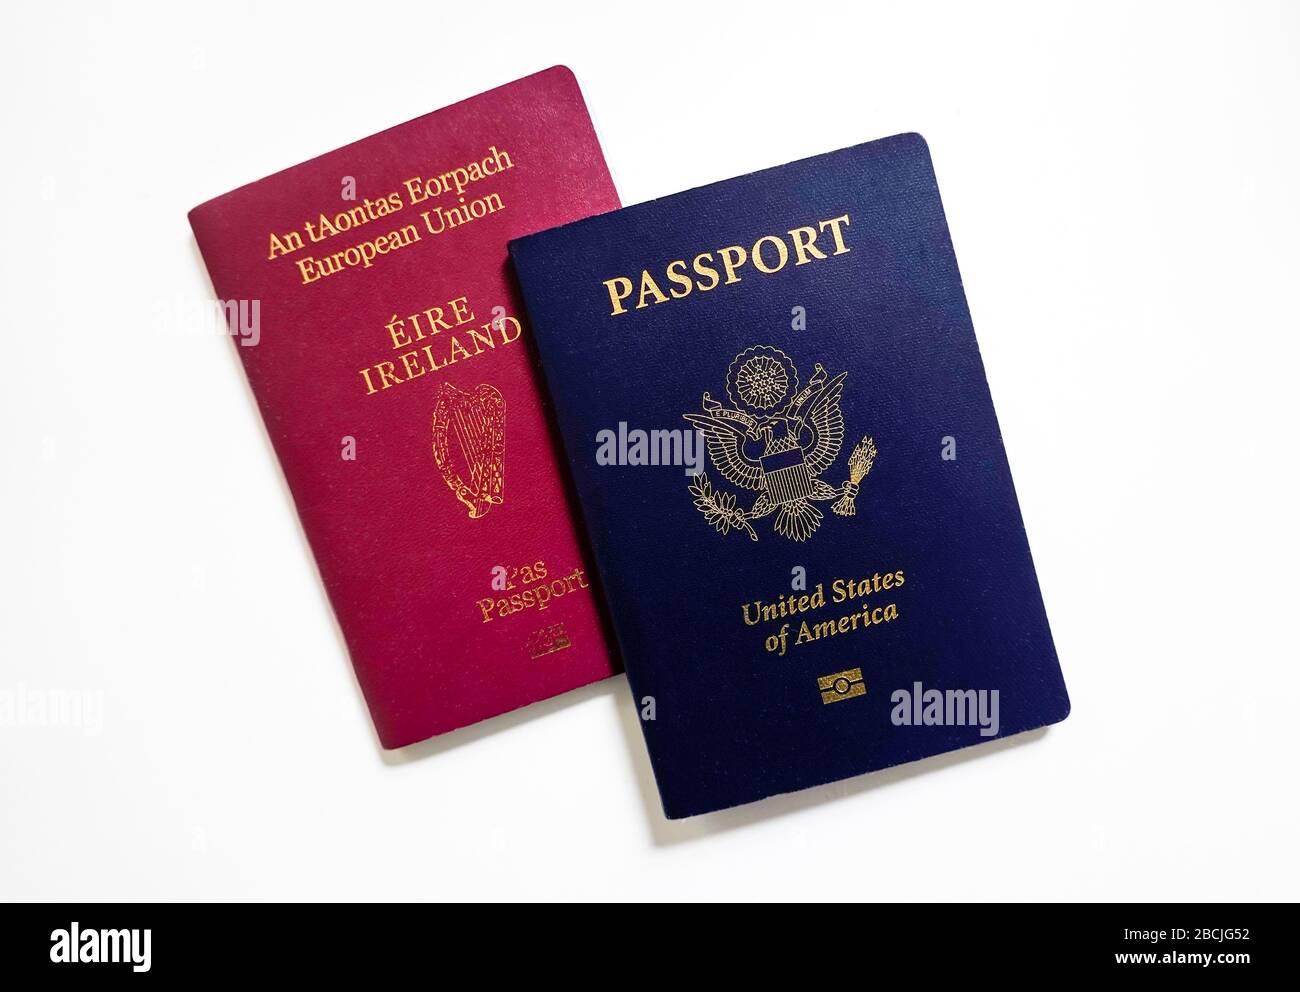 America passport download whatsapp